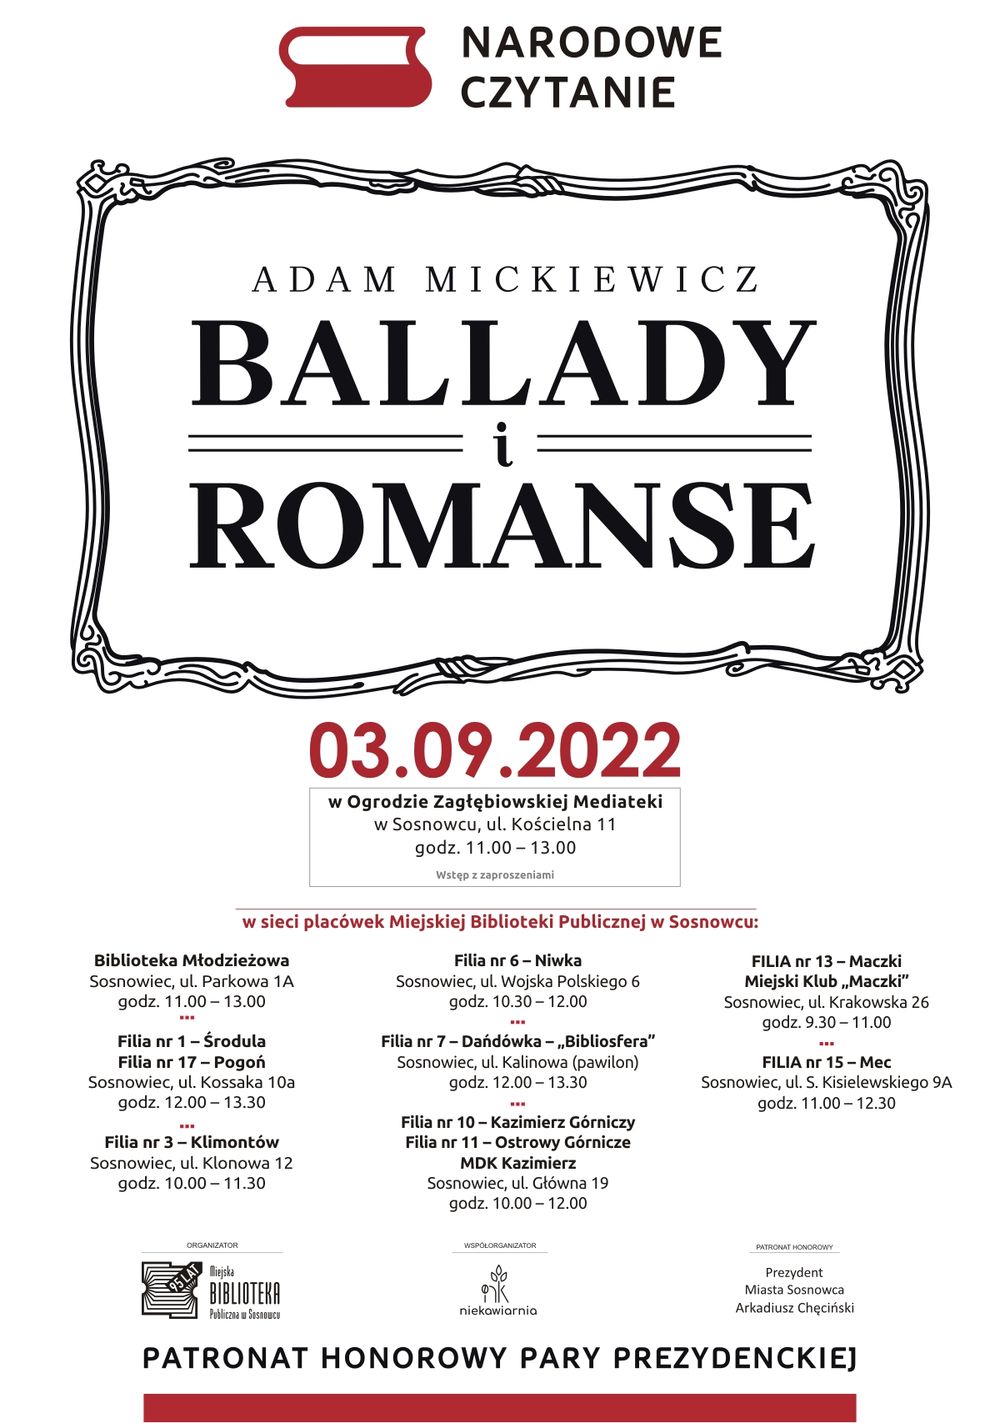 Narodowe Czytanie 2022 – „Ballady i romanse” Adama Mickiewicza [3.09.2022]